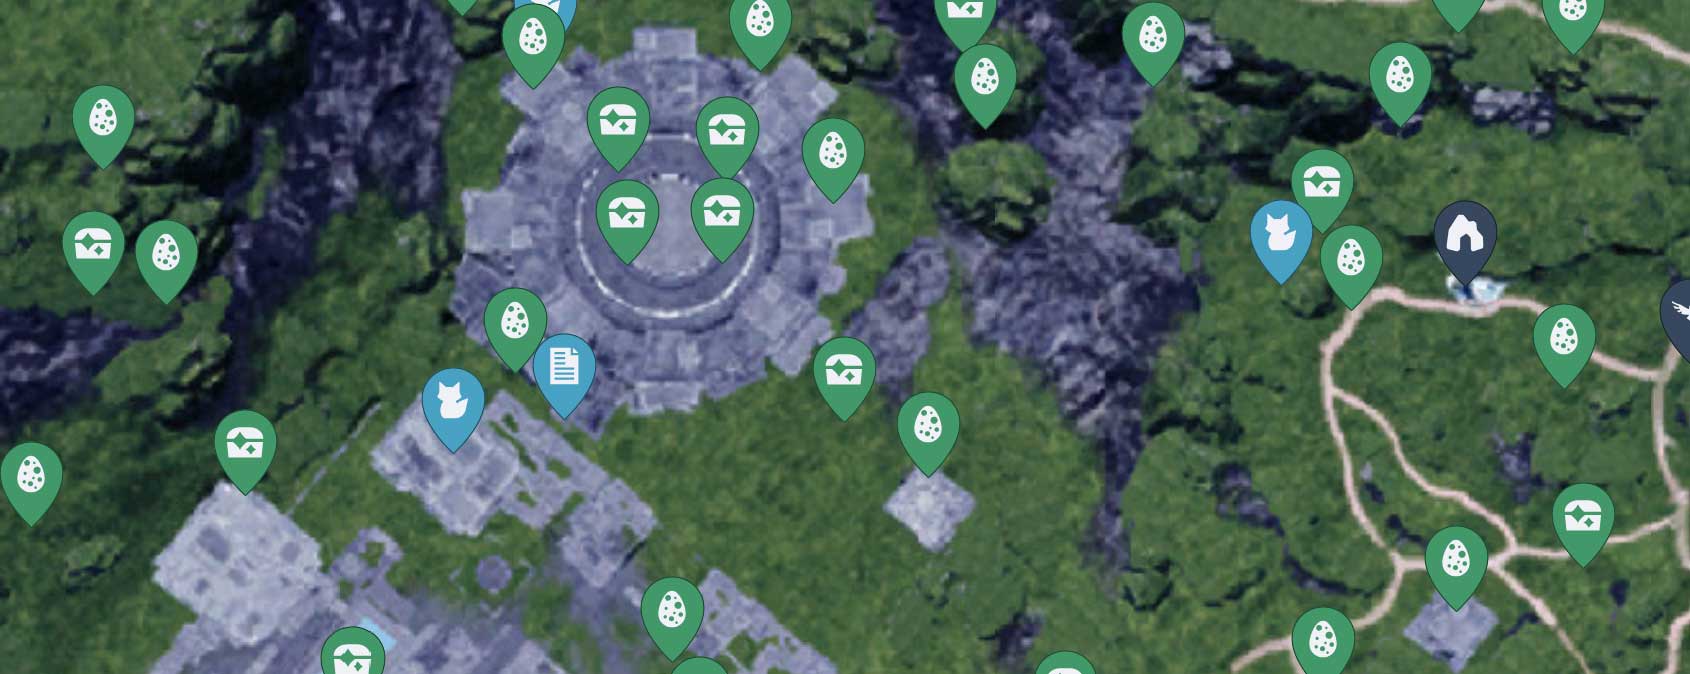 Palworld Map: A Gateway to an Immersive Virtual World 1